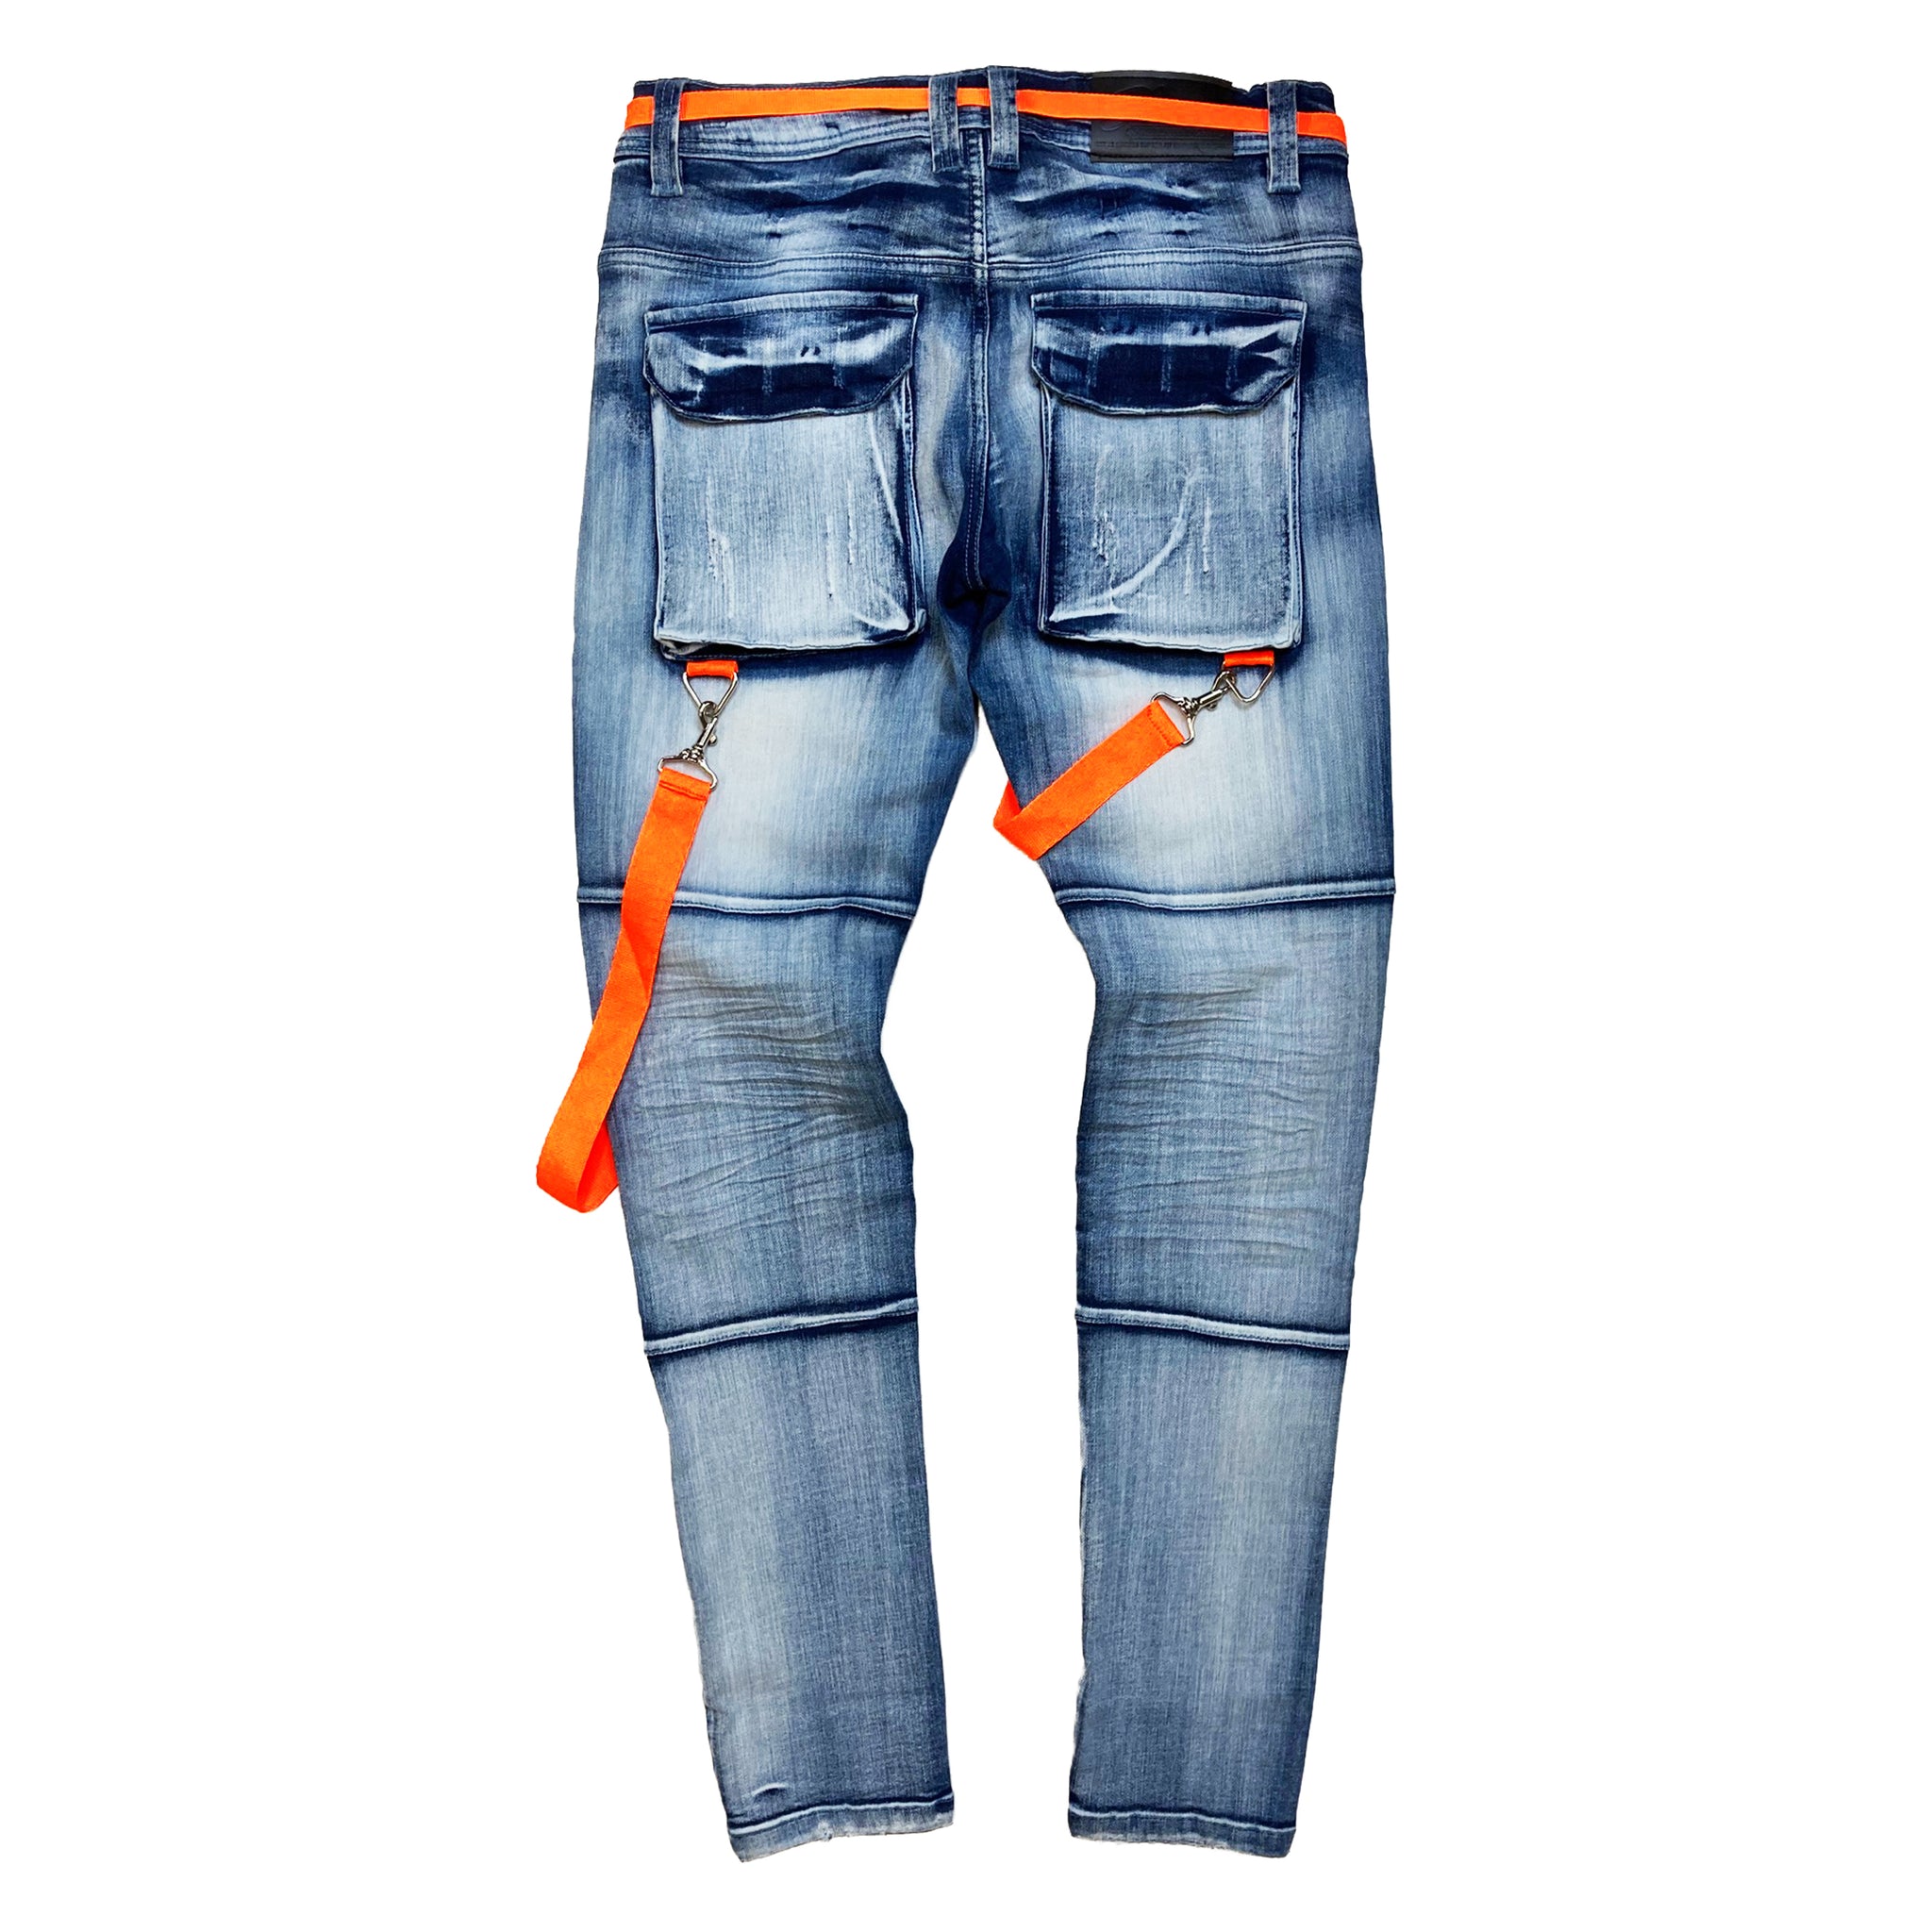 Horizon Men's Premium Cargo Jeans - Elite Premium Denim